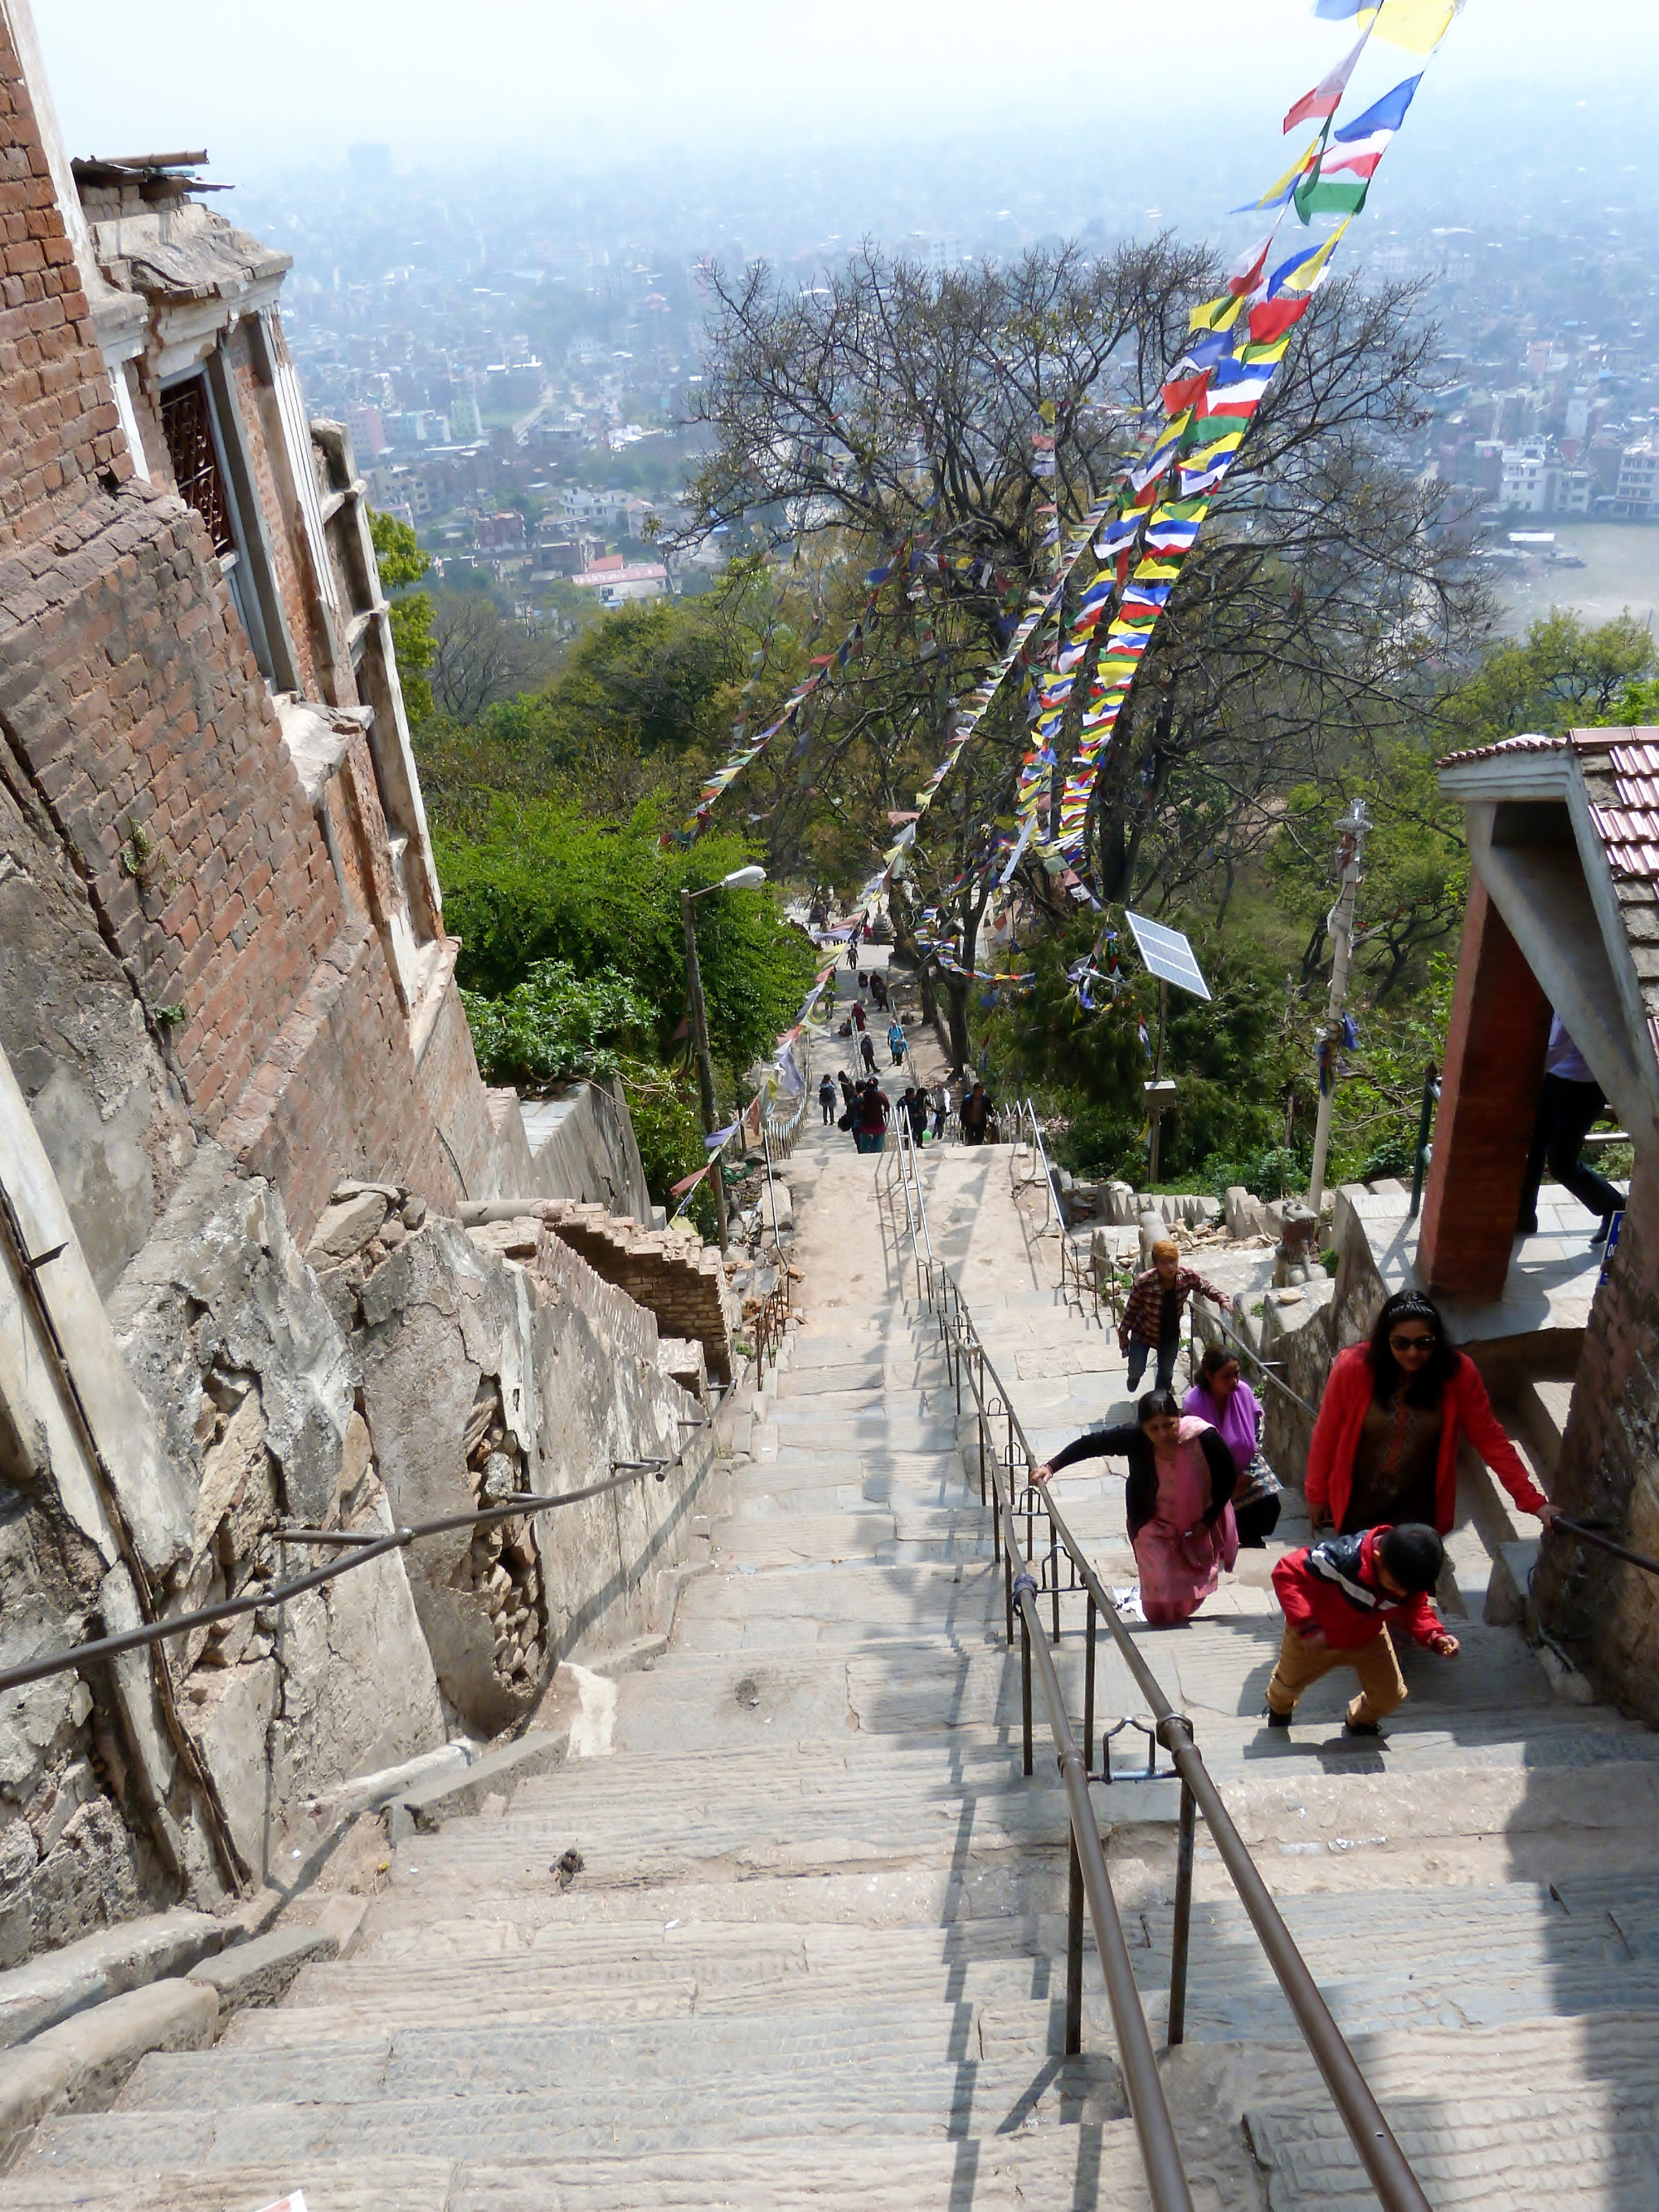 Swayambhu Mahachaitya, Непал